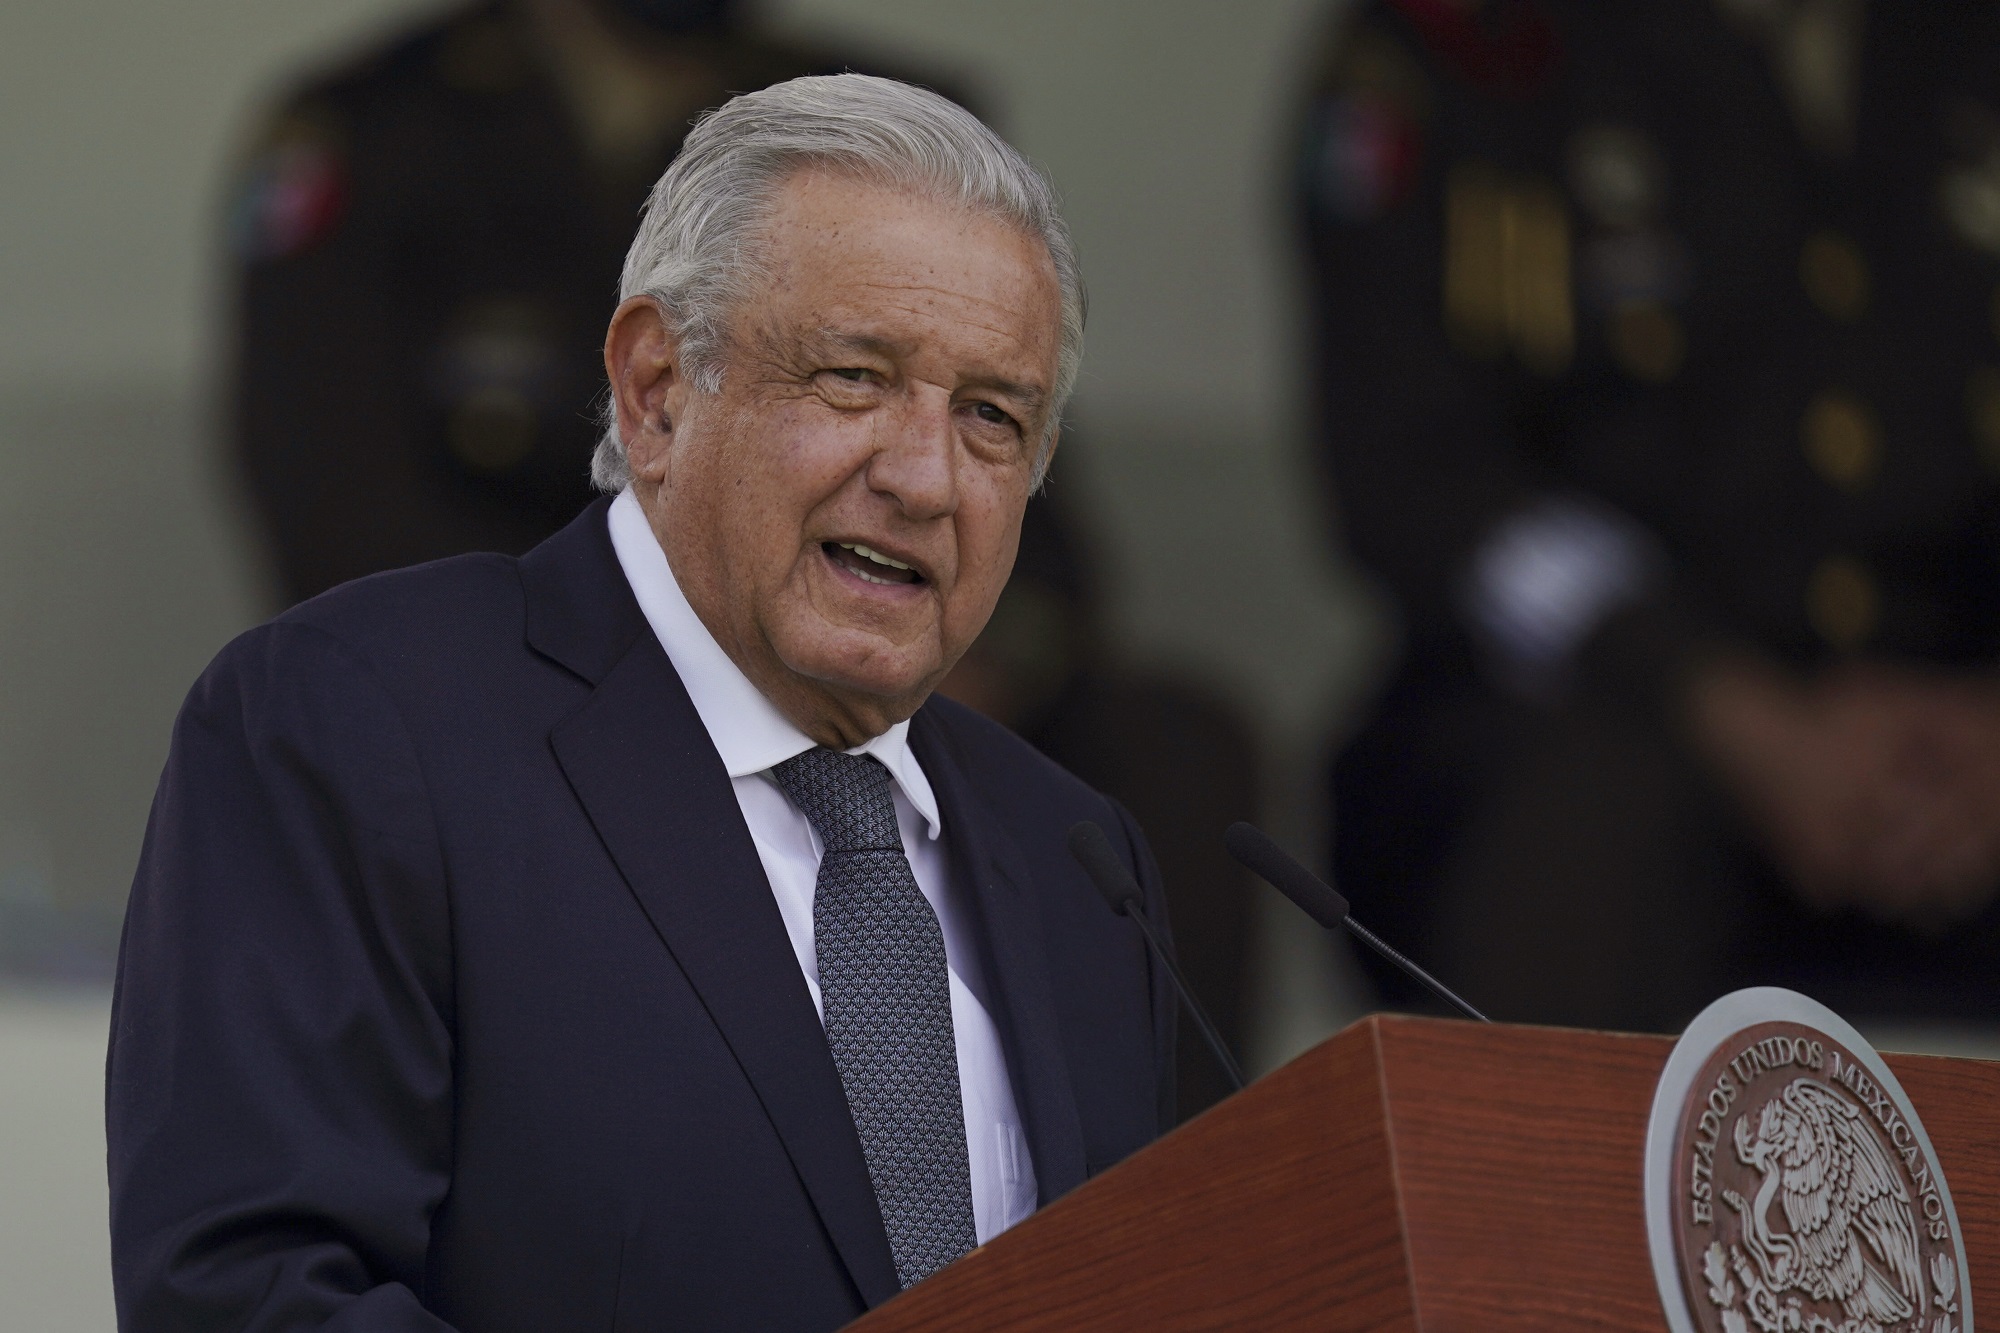 Αποδείξεις ή συγγνώμη από τις ΗΠΑ ζητά ο πρόεδρος του Μεξικού για δημοσίευμα ότι καρτέλ ναρκωτικών χρηματοδότησε την εκστρατεία του το 2006